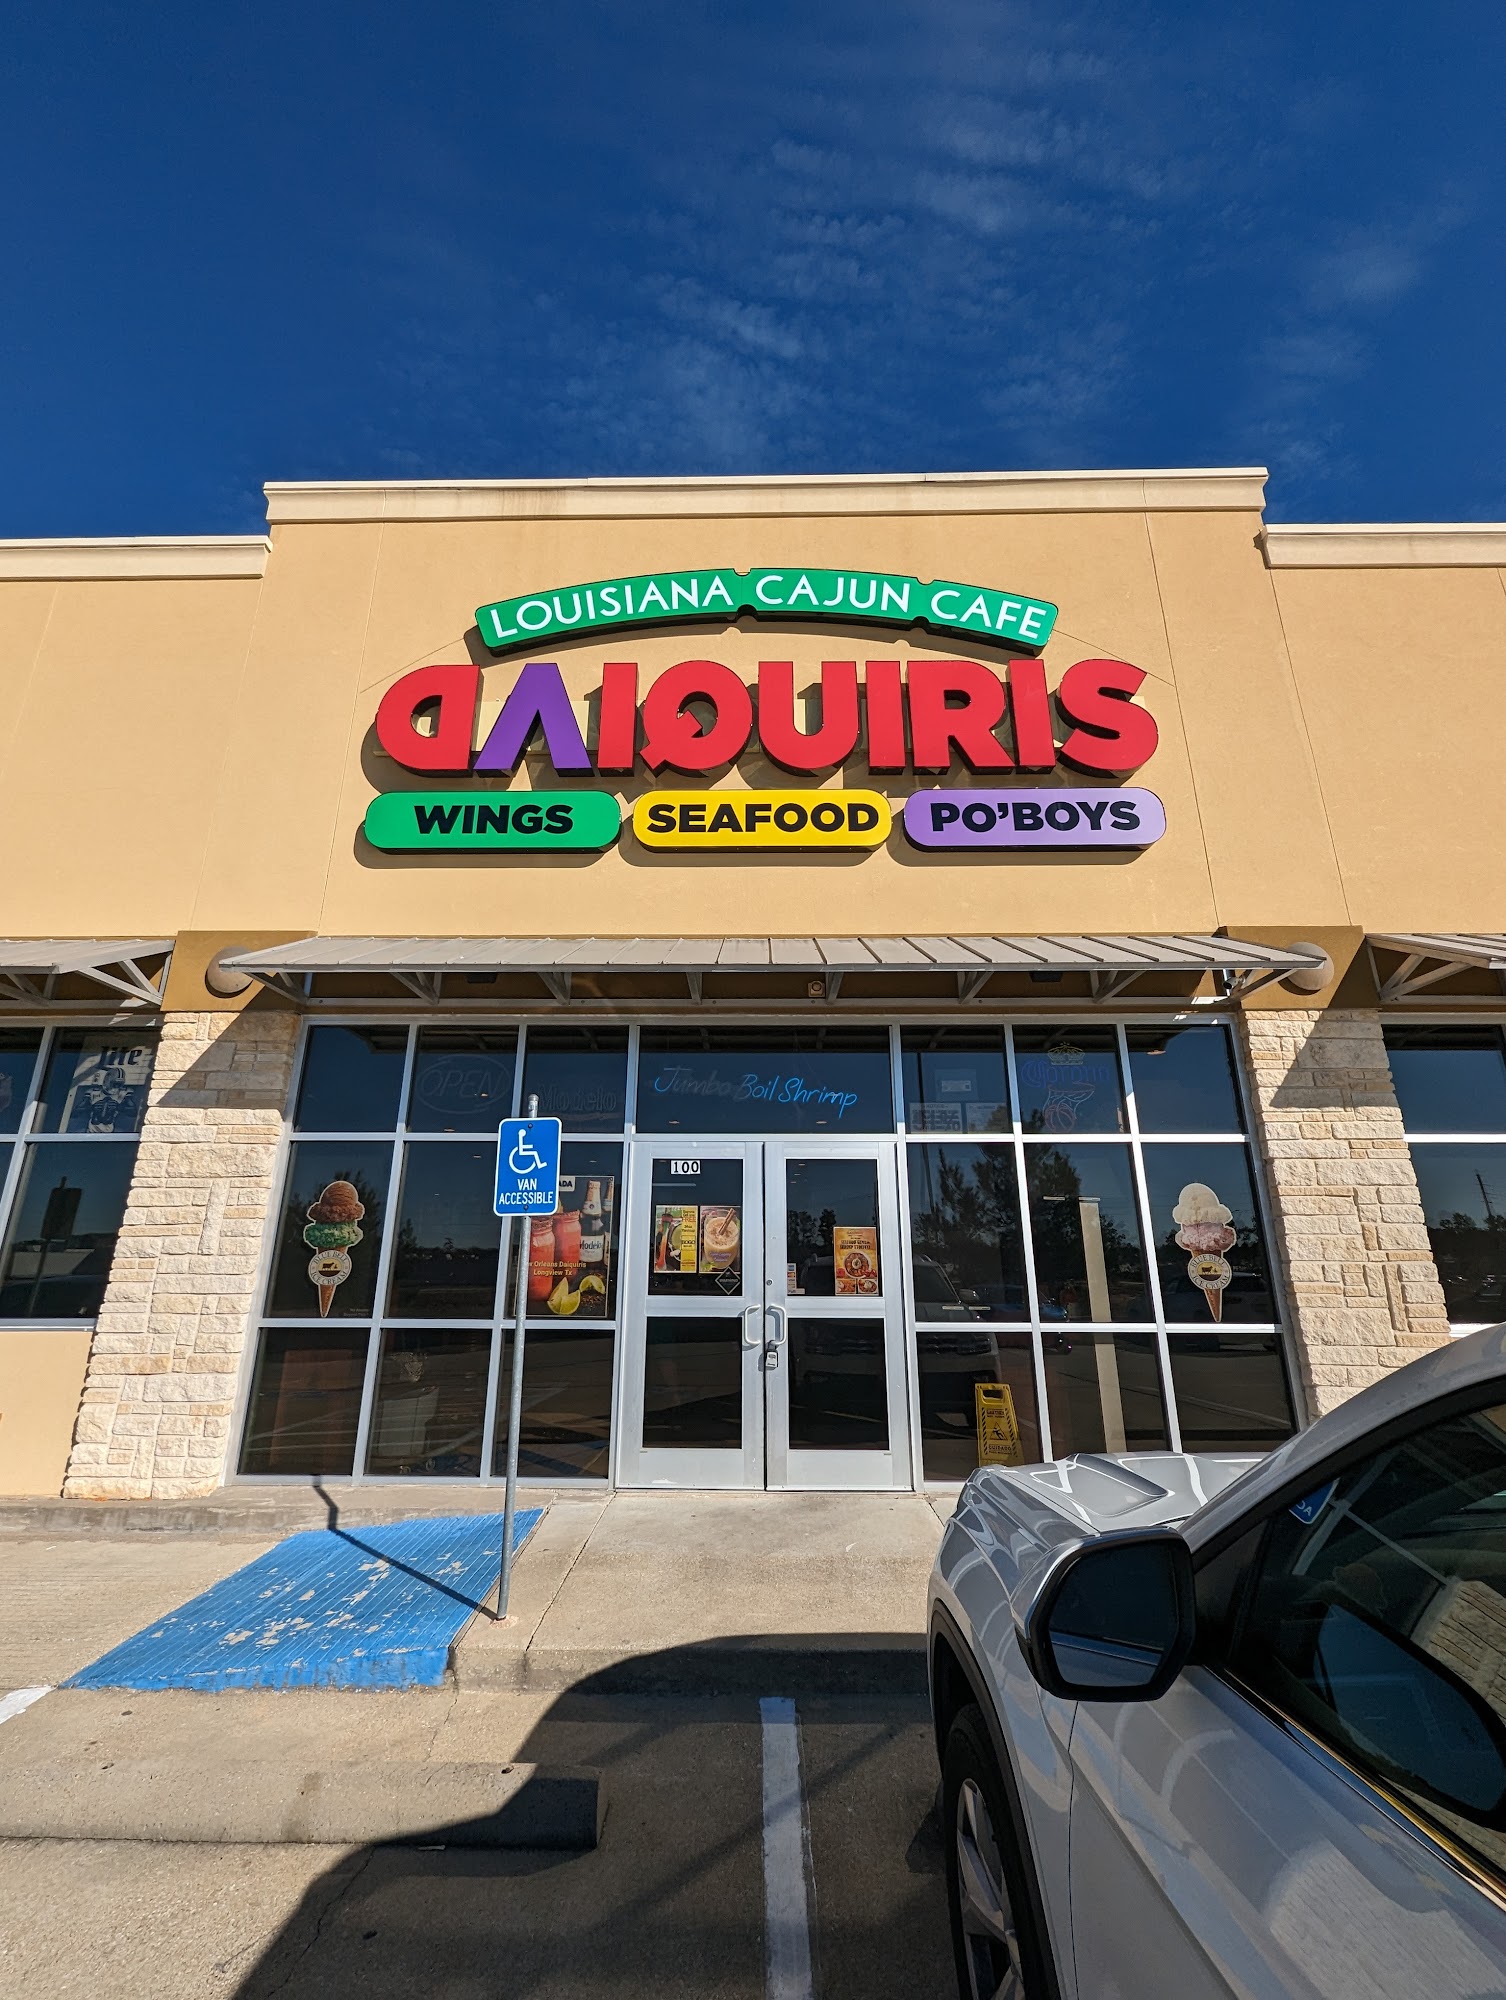 Louisiana Cajun Cafe & Daiquri’s